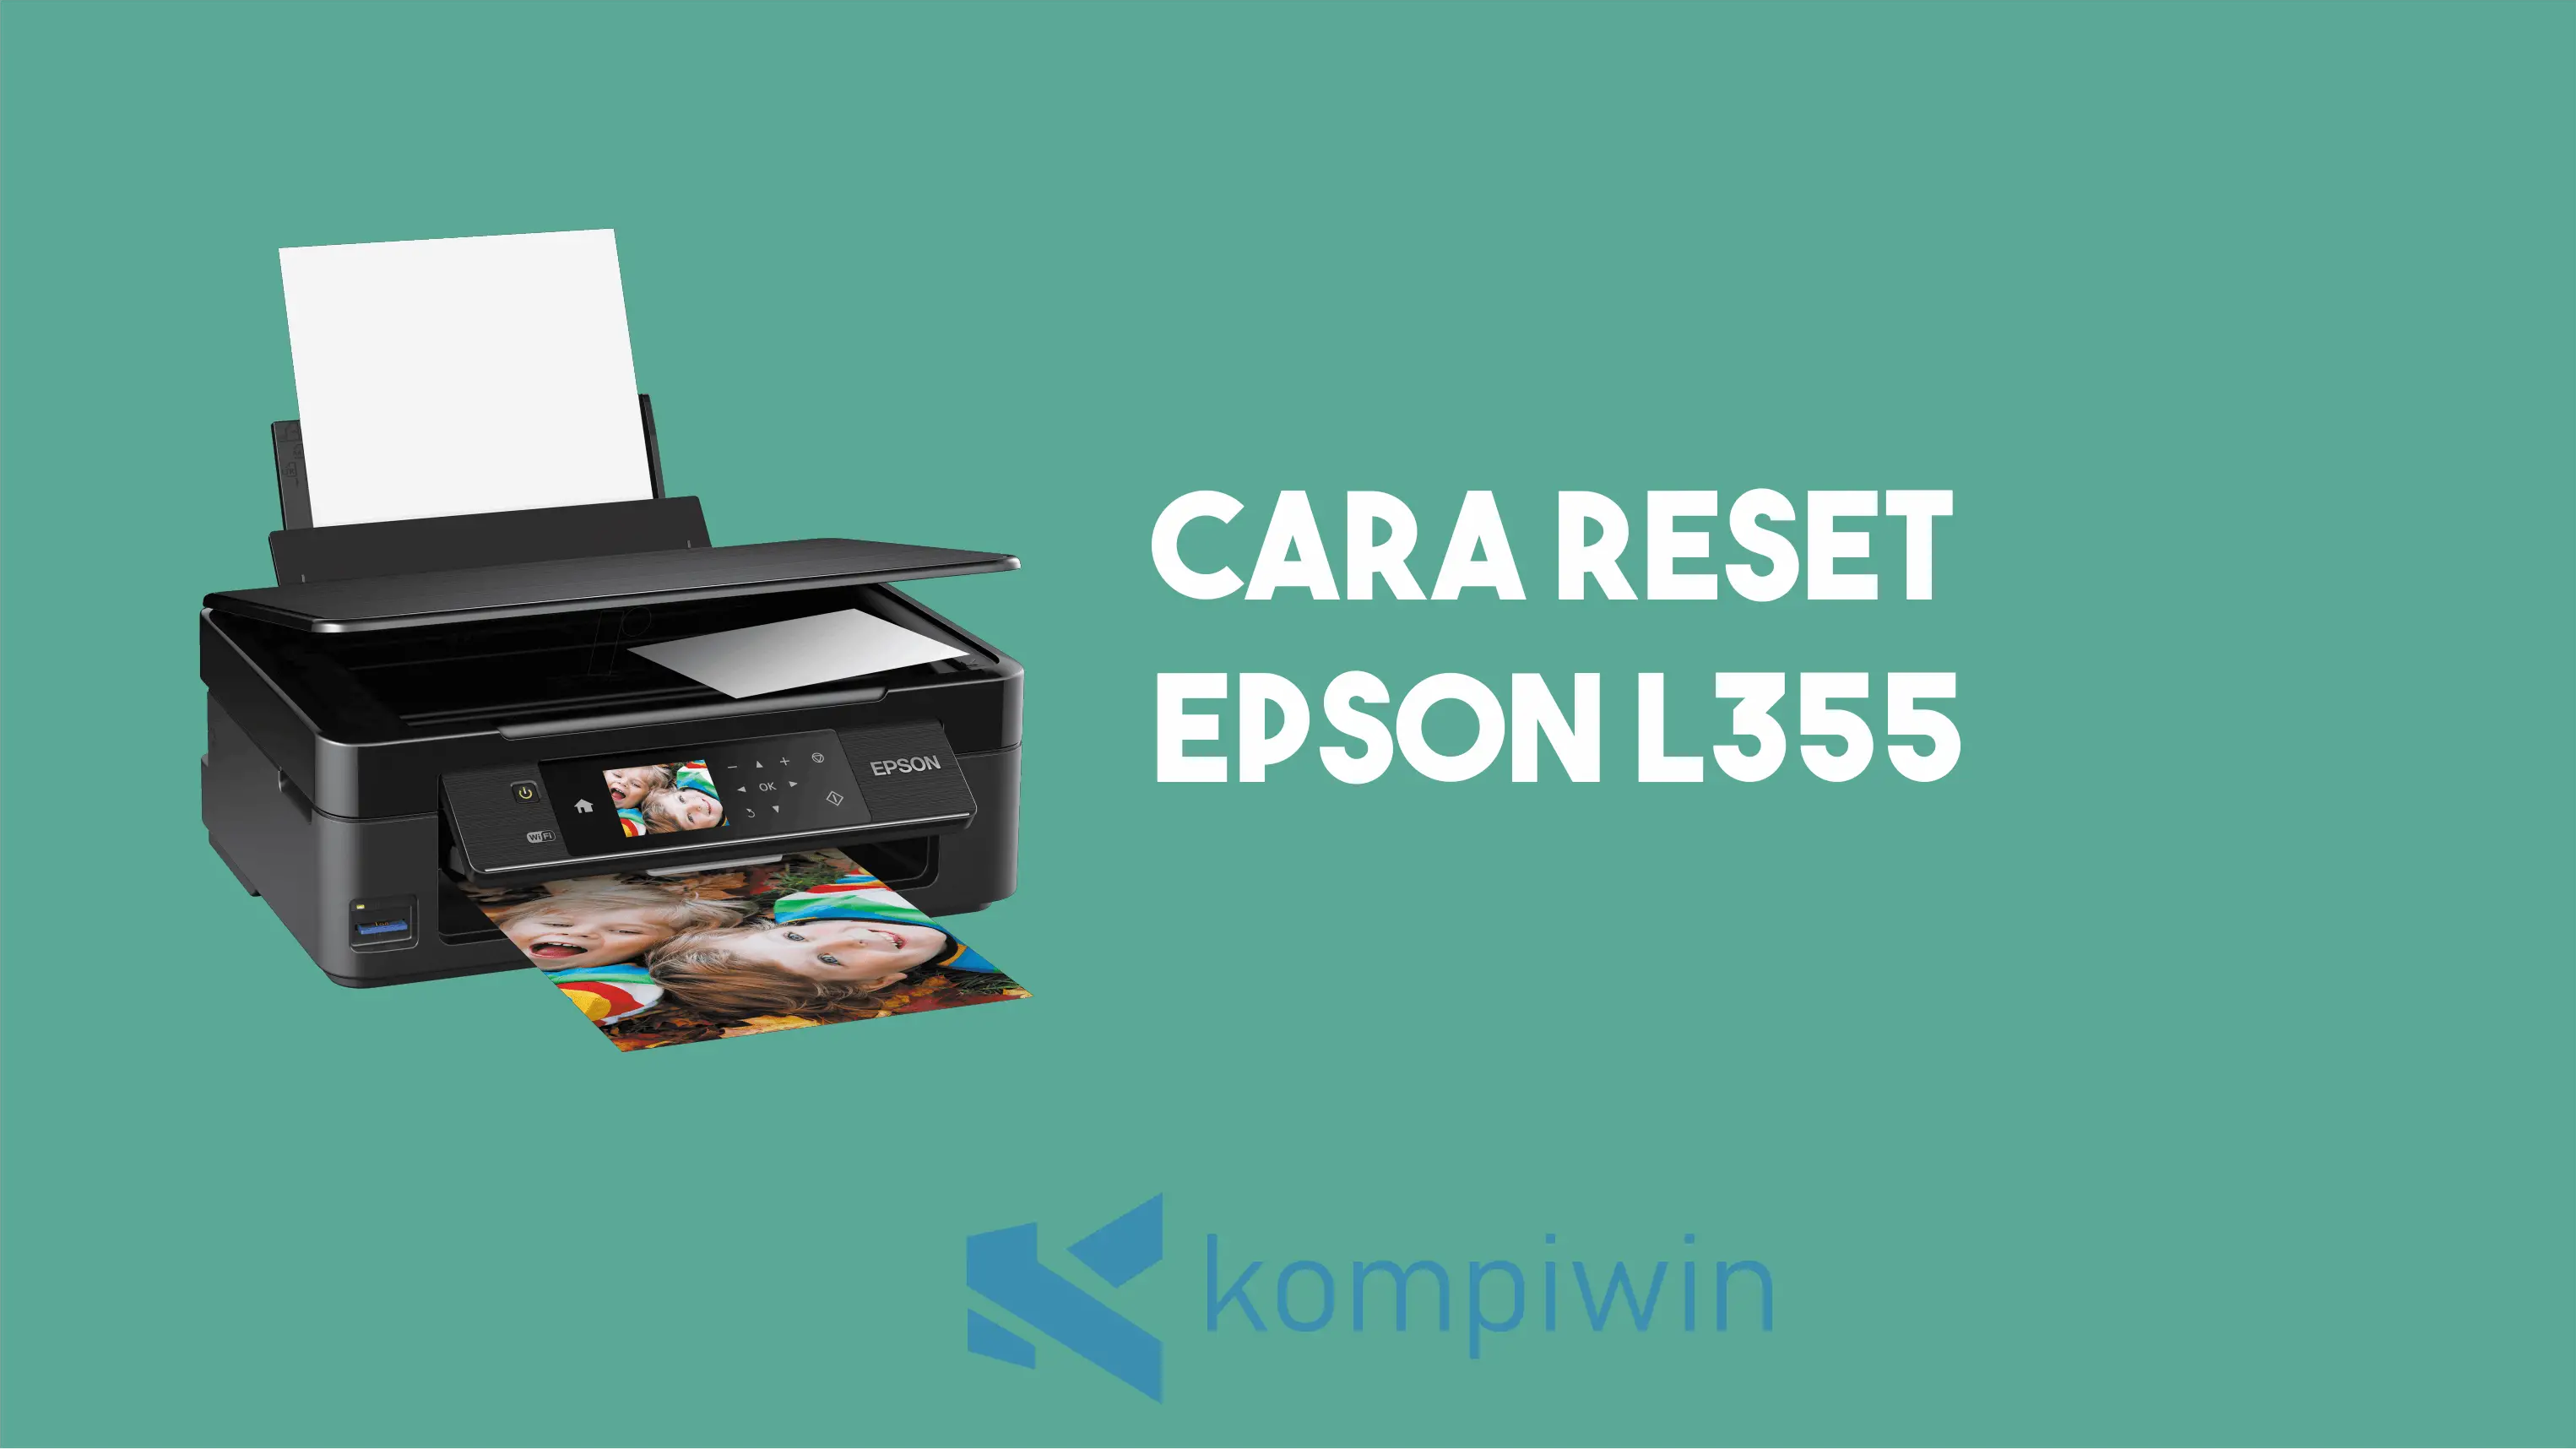 Cara Reset Epson L355